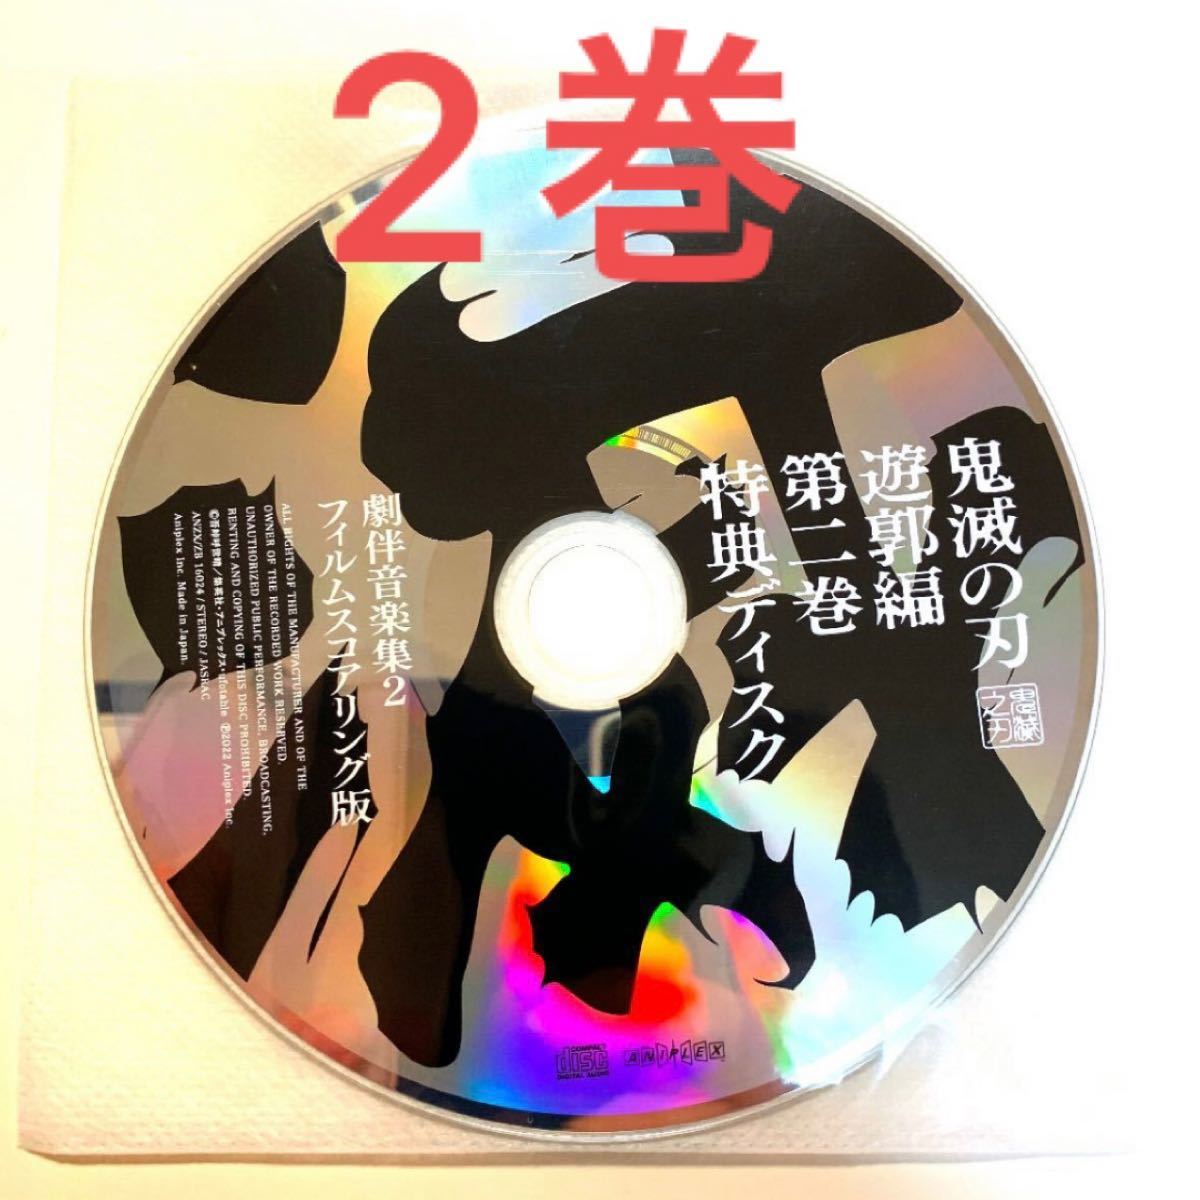 鬼滅の刃 遊郭編 BD DVD 2巻 特典 CD 劇伴音楽集 2 フィルムスコアリング版